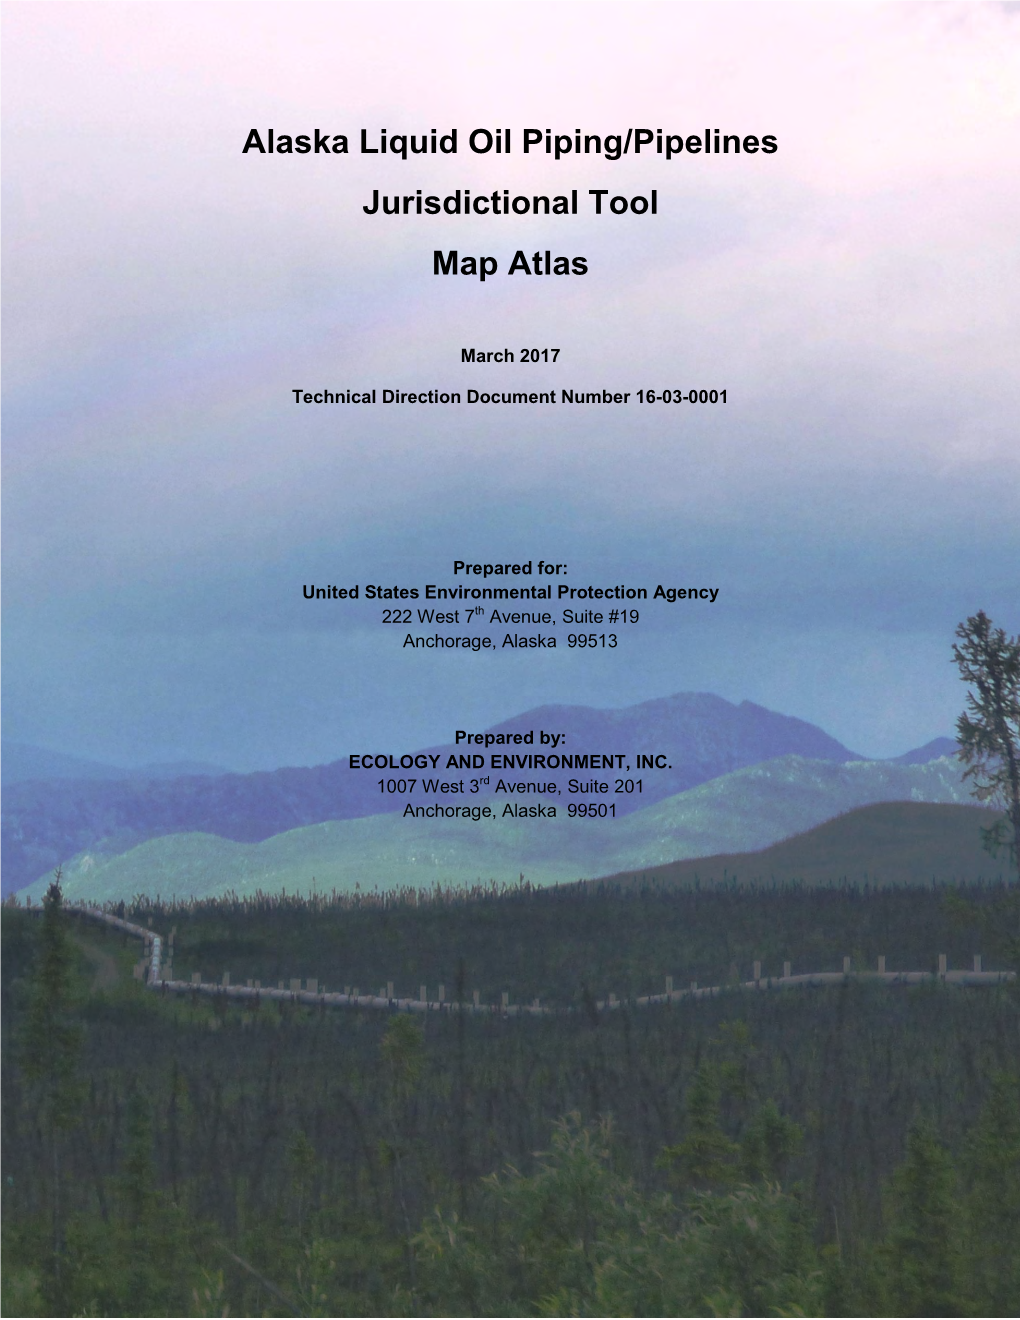 Alaska Liquid Oil Piping/Pipelines Jurisdictional Tool Map Atlas